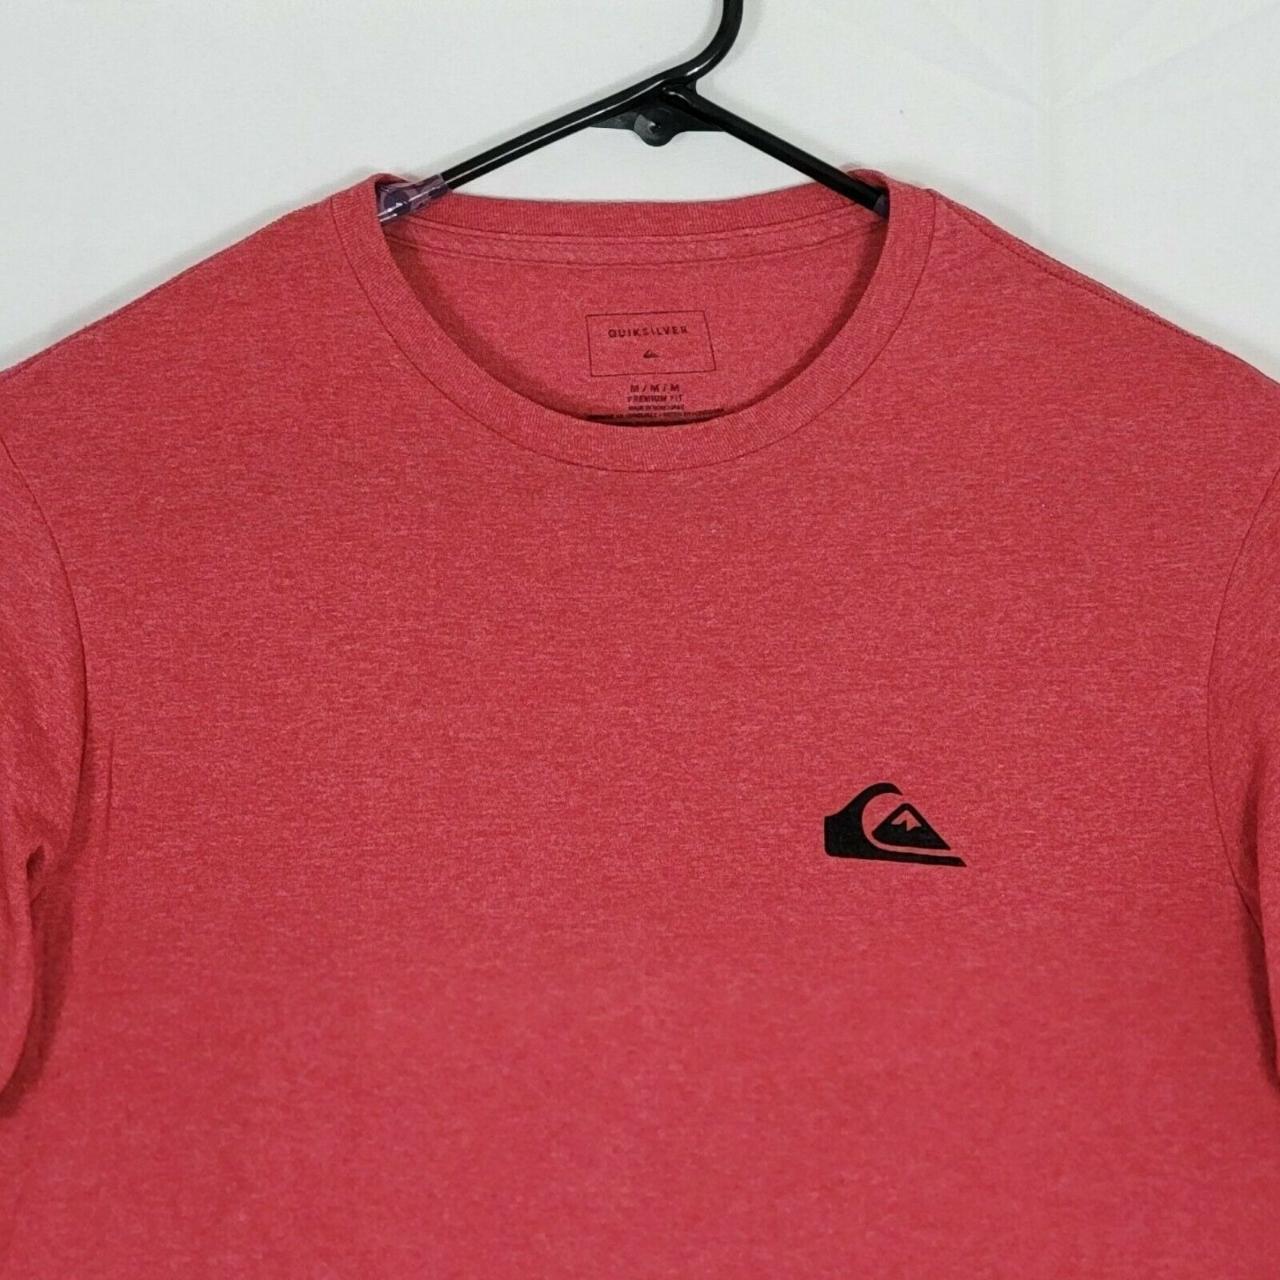 Quiksilver Men's Red T-shirt | Depop